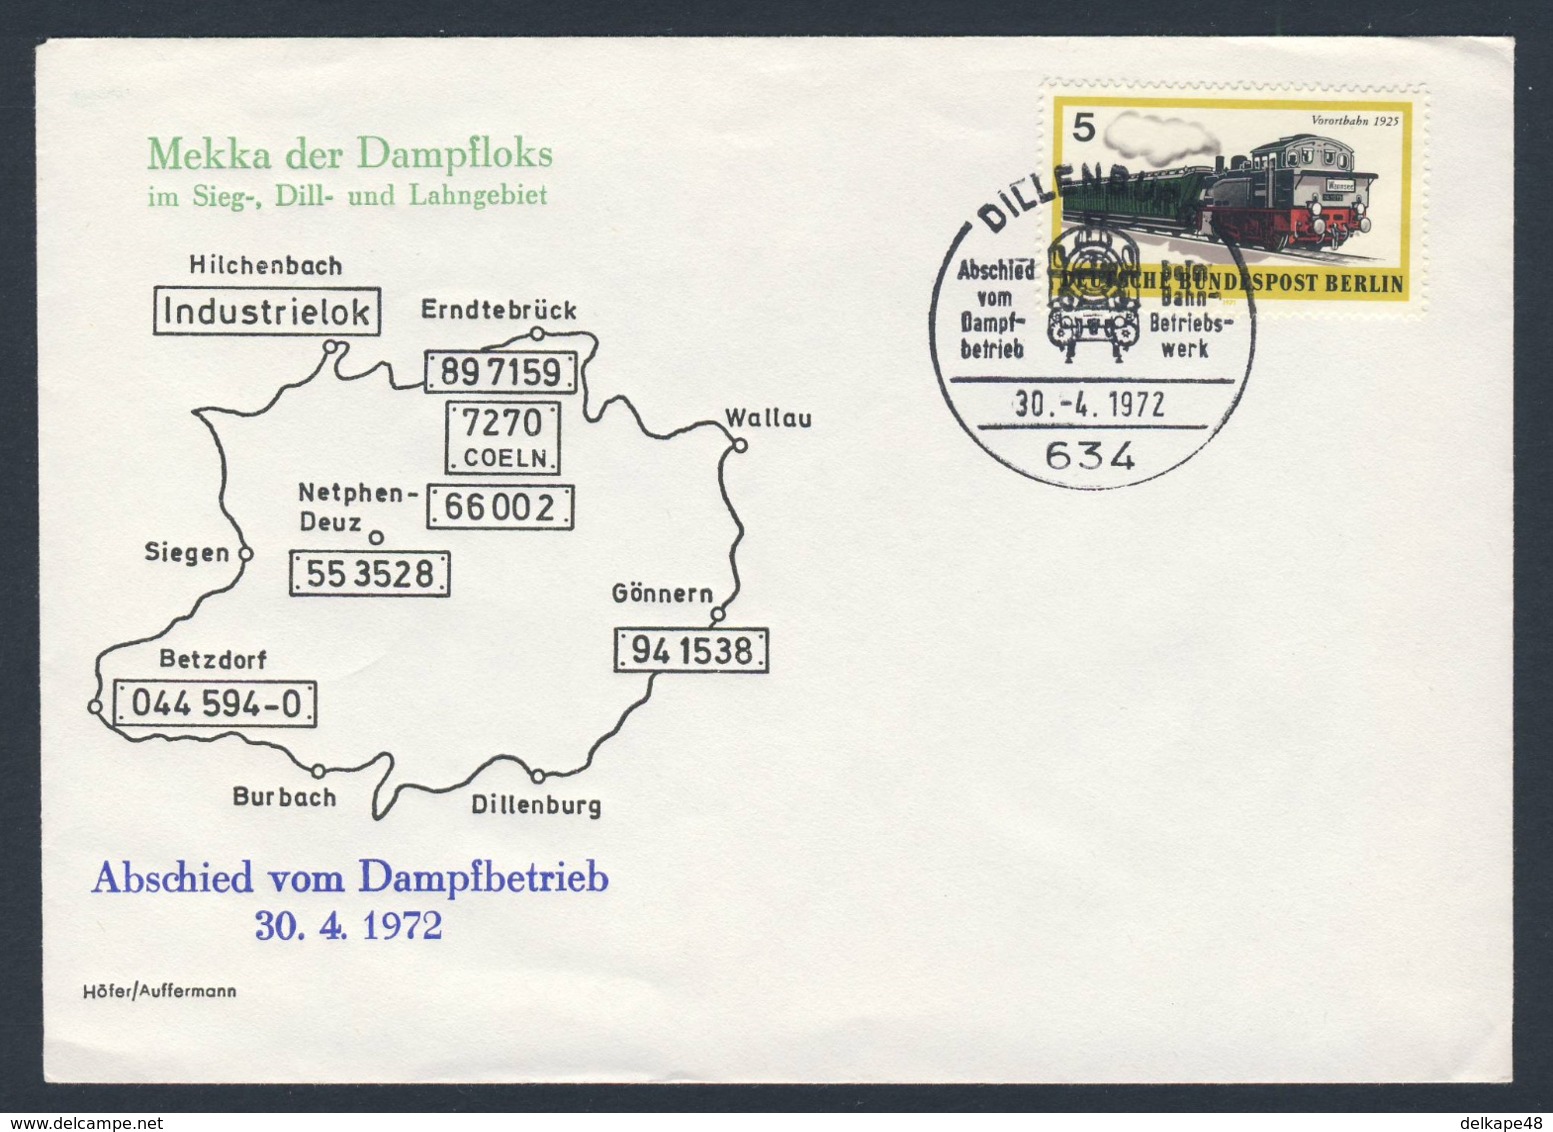 Deutschland Germany 1972 Cover / Brief / Enveloppe - Abschied Vom Dampfbetrieb - Sieg + Dill + Lahngebiet (1972) - Treinen